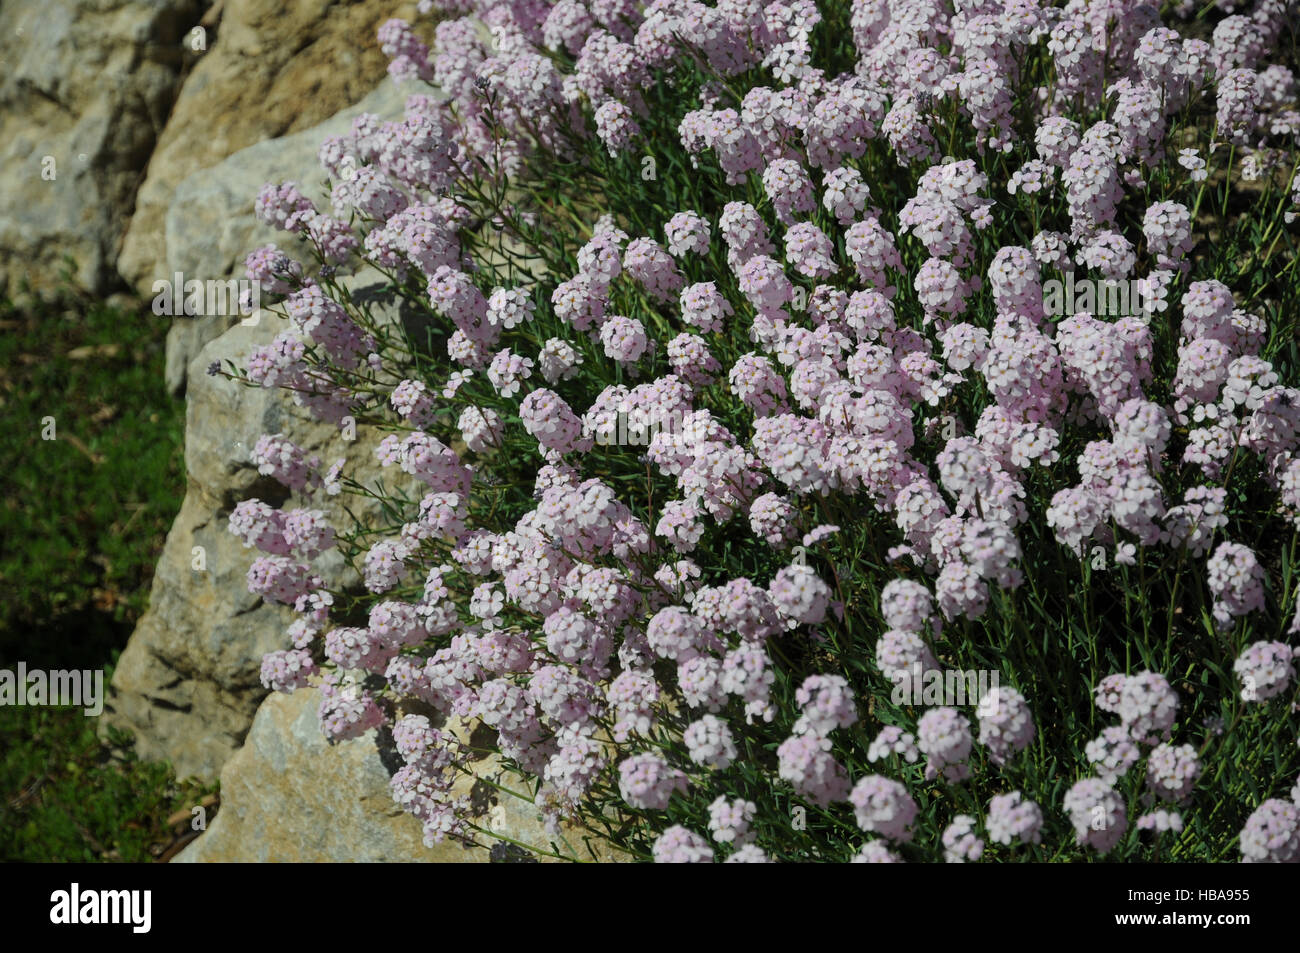 Aethionema grandiflora, Persian stonecress Stock Photo